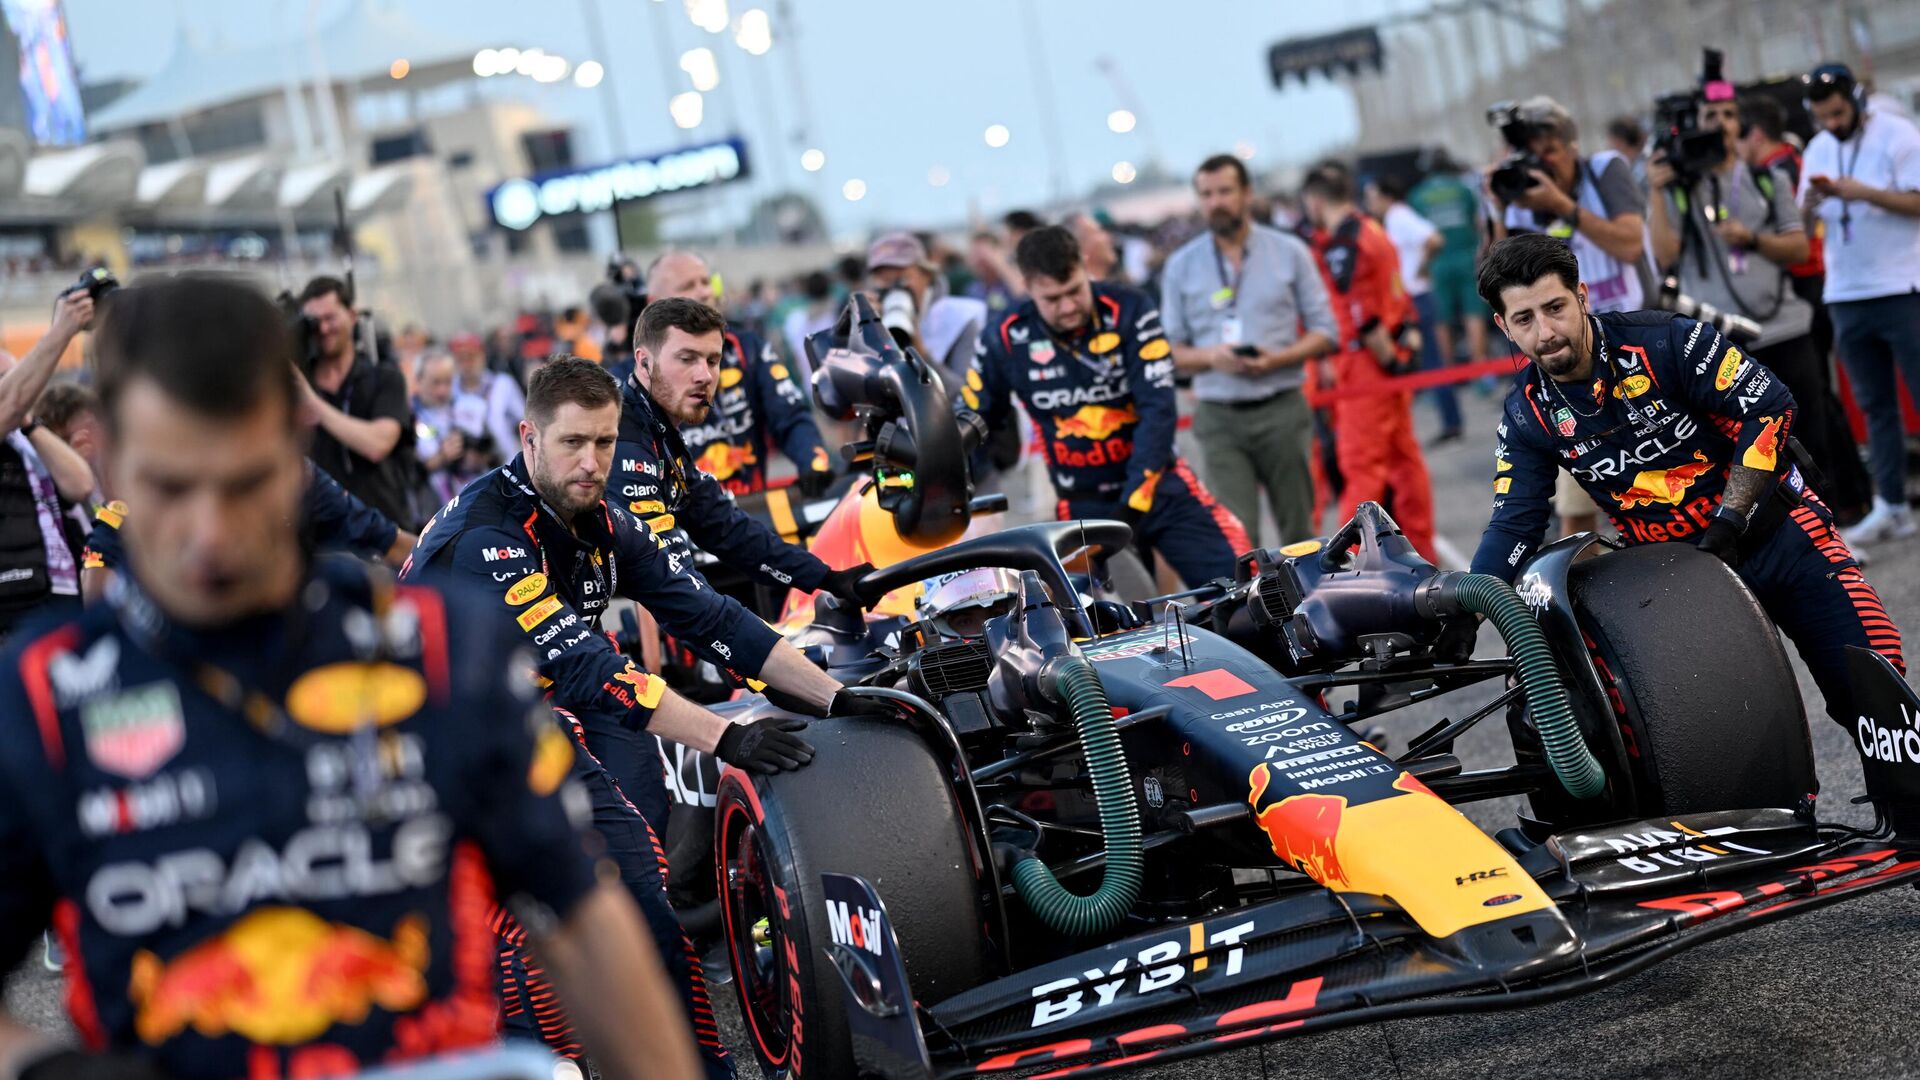 Механики толкают машину голландского гонщика Red Bull Racing Макса Ферстаппена перед стартом Гран-при Бахрейна Формулы-1 на международной трассе Бахрейна в Сахире 5 марта 2023 года - Sputnik Беларусь, 1920, 05.03.2023